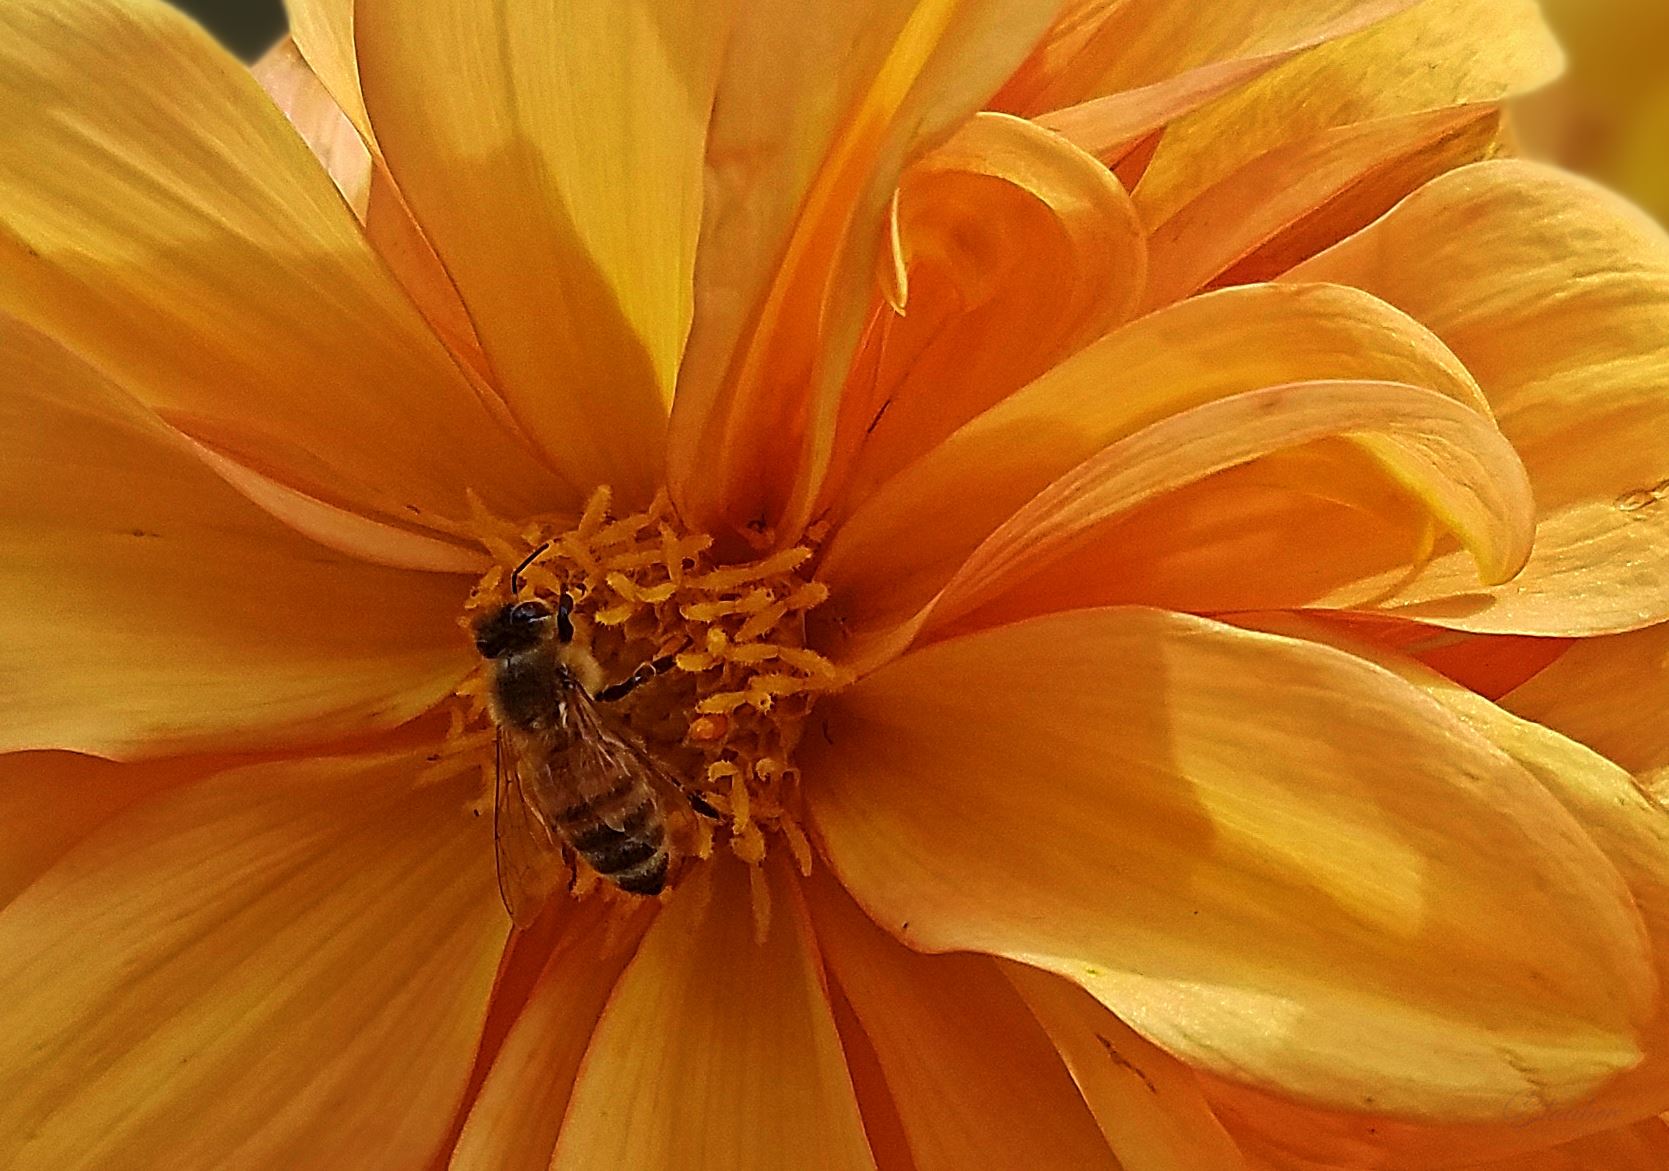 00-yellowflower-bee-20170930_123608C.jpg  by CLStauber Photography